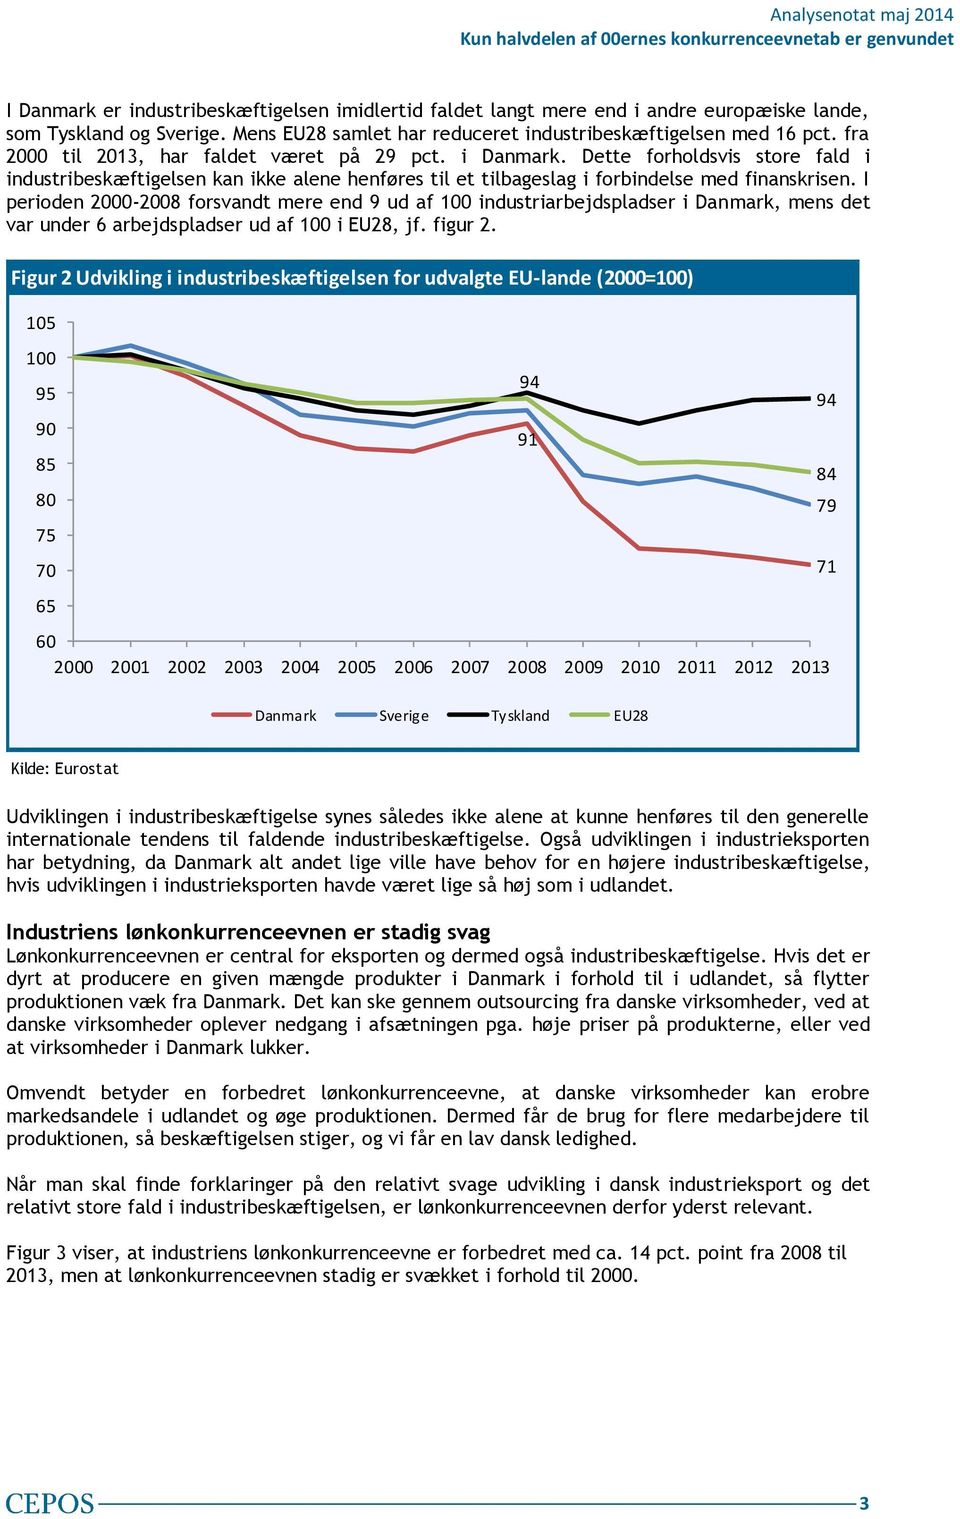 I perioden 2000-2008 forsvandt mere end 9 ud af 100 industriarbejdspladser i Danmark, mens det var under 6 arbejdspladser ud af 100 i EU28, jf. figur 2.